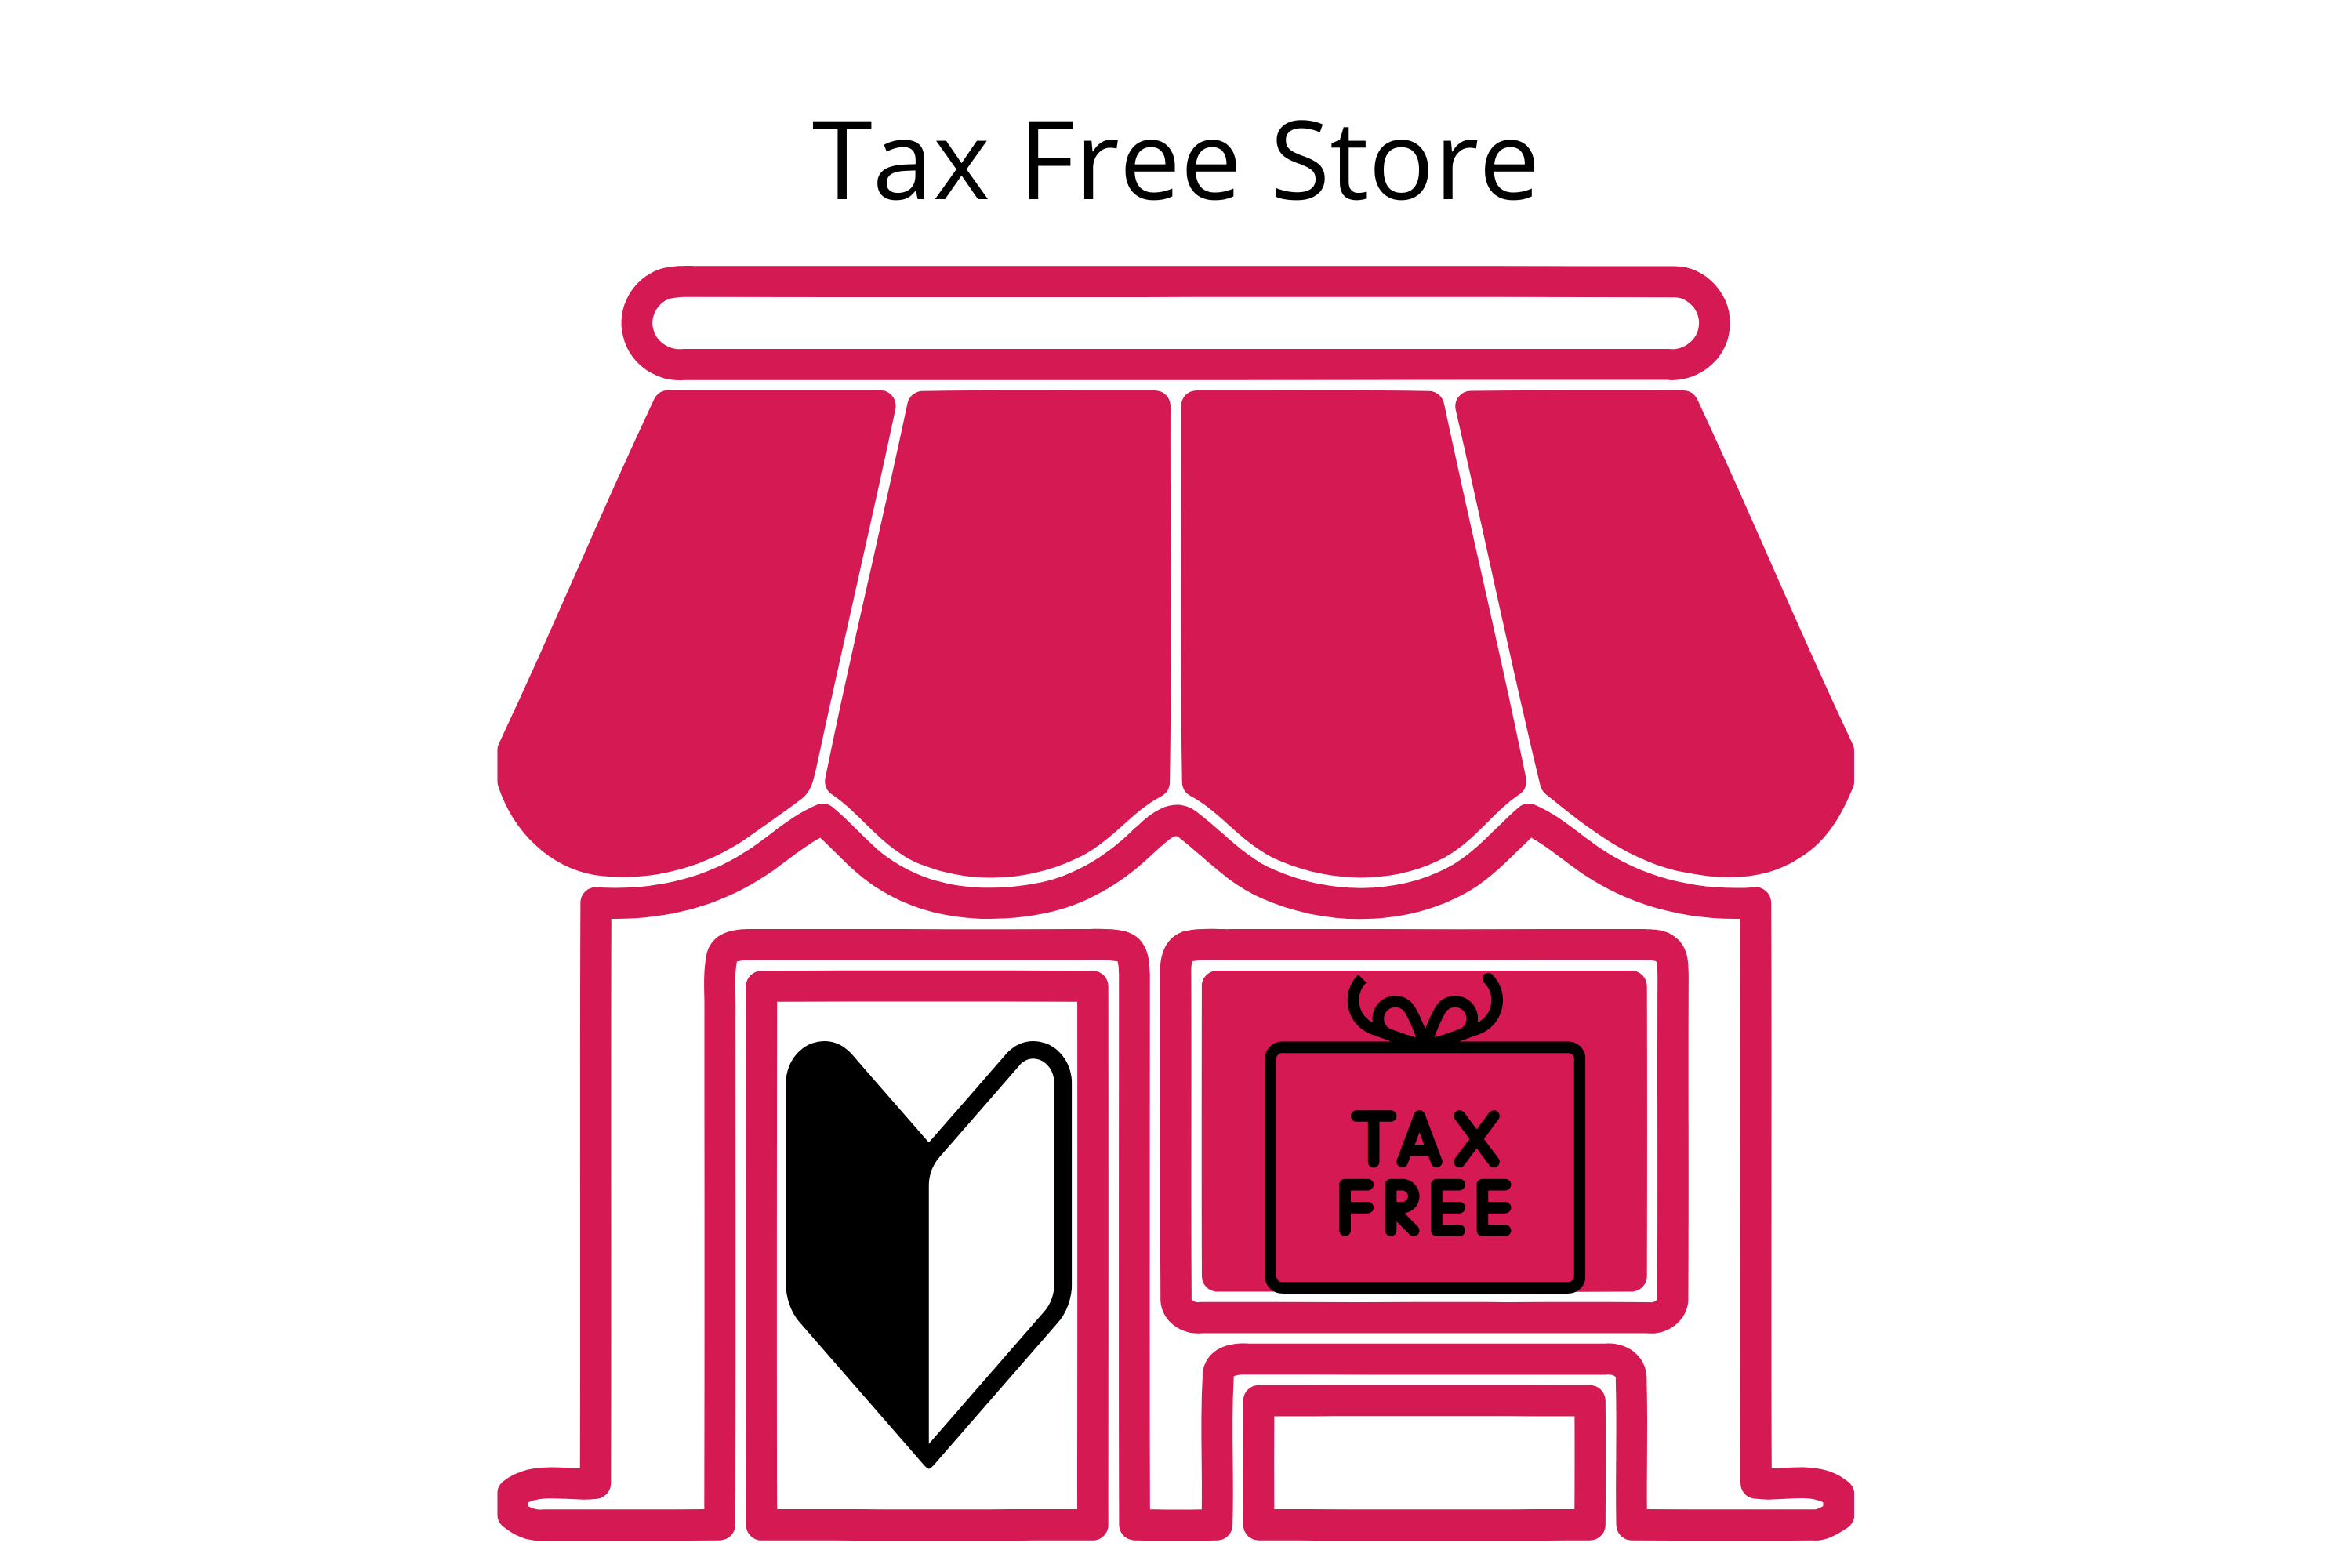 tax free shopping at individual stores